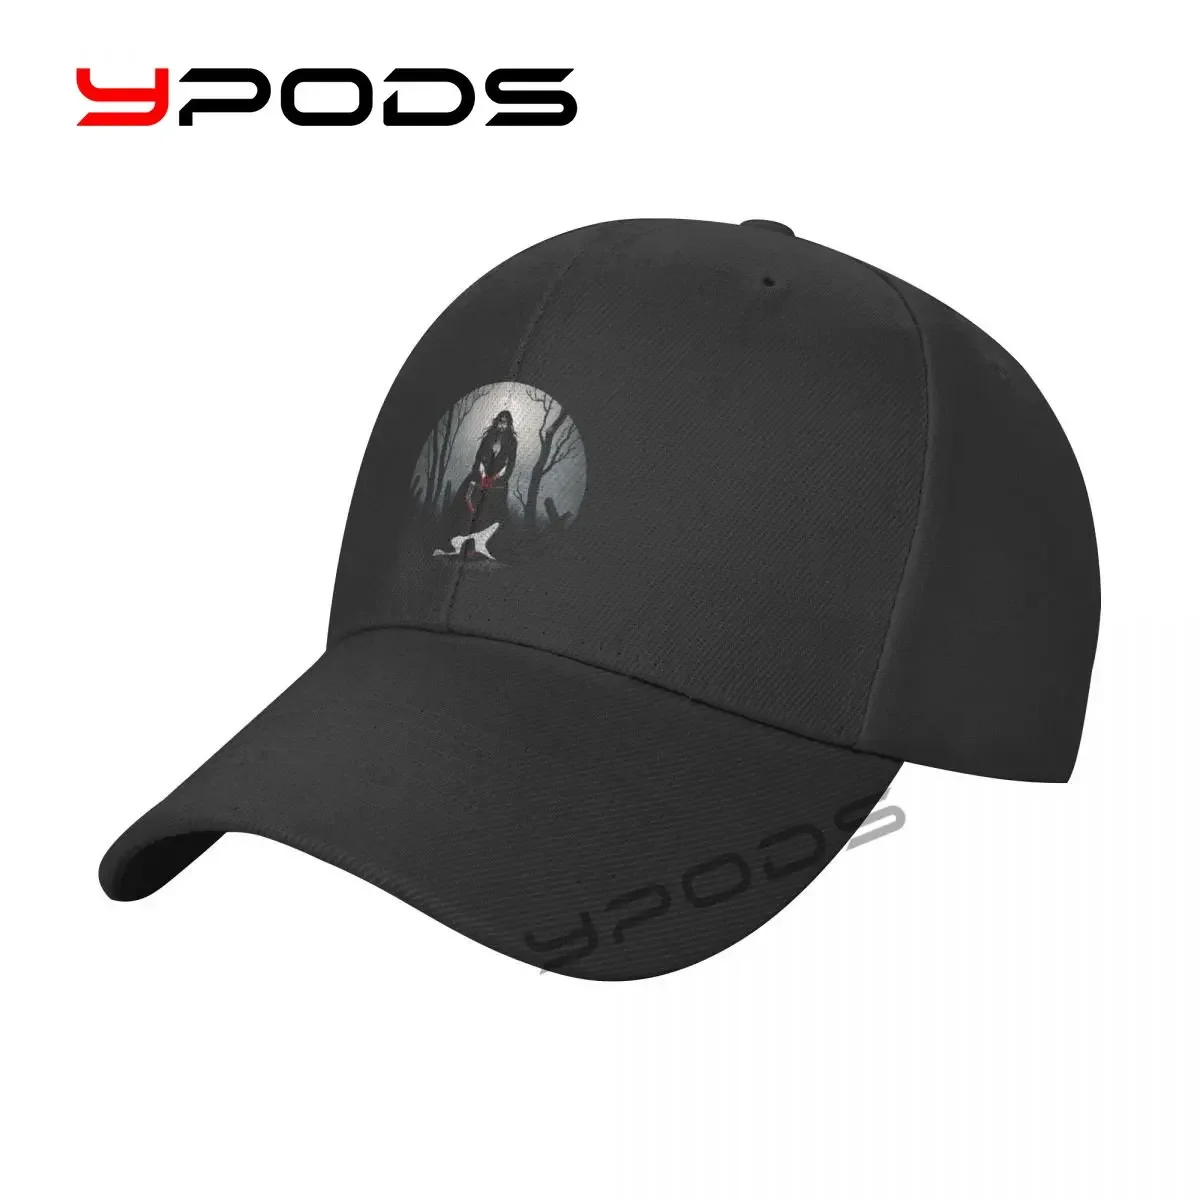 

Men's Baseball Caps Witchfinder-General Women Summer Snapback Cap Adjustable Outdoor Sport Sun Hat